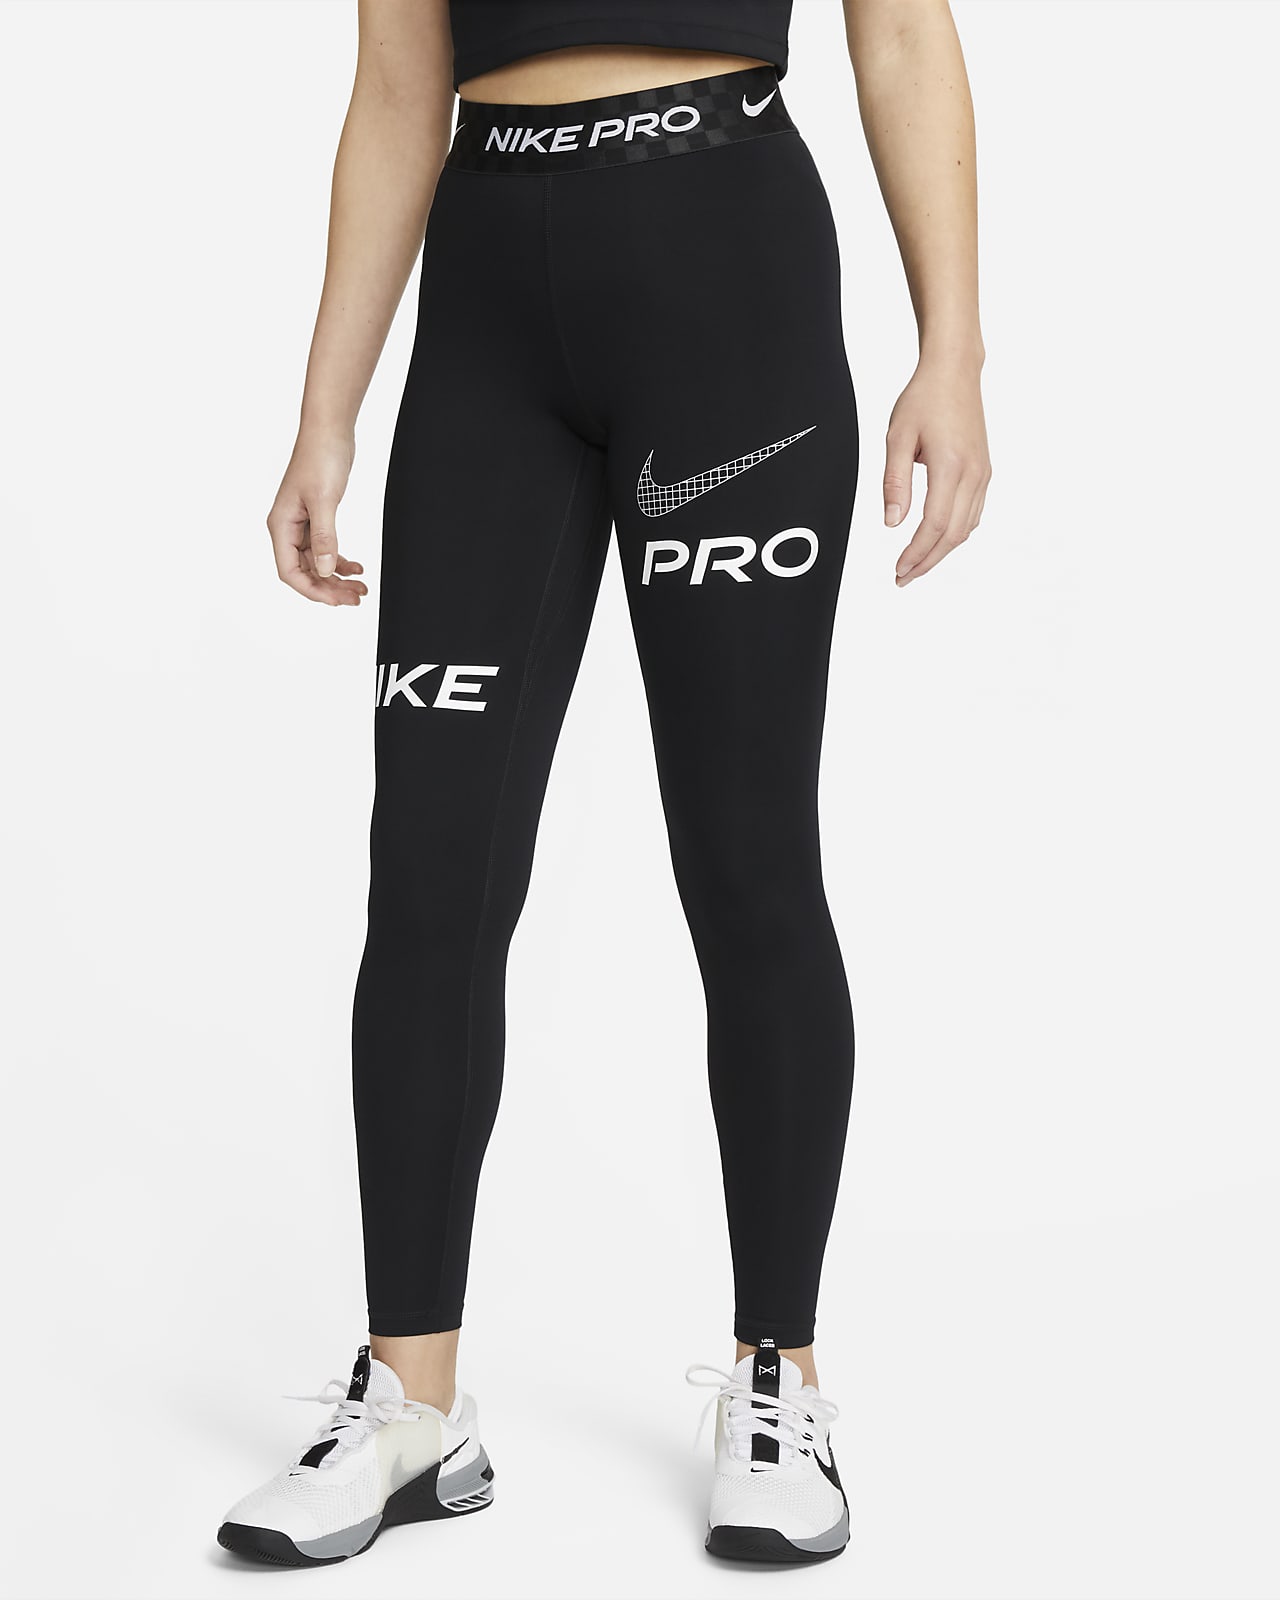 Legging long de training taille mi-basse à motif Nike Pro pour femme